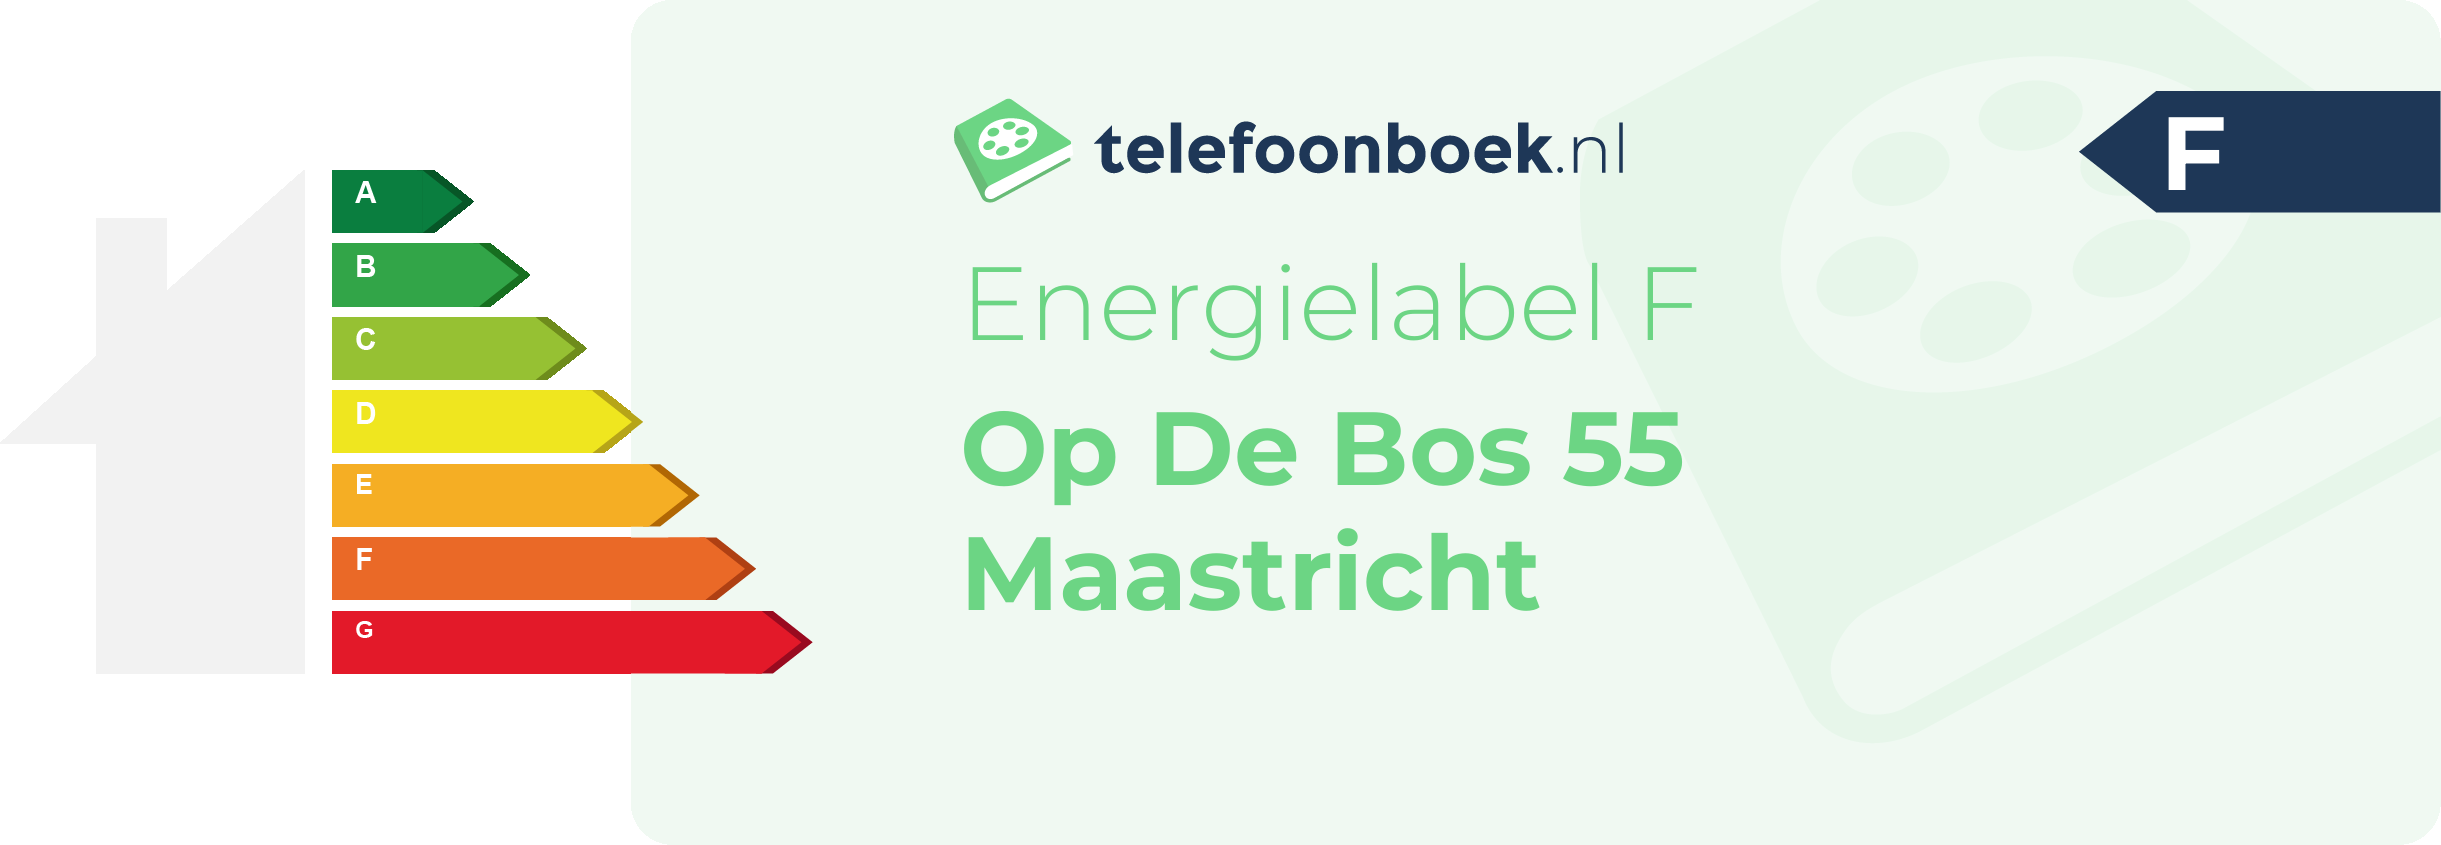 Energielabel Op De Bos 55 Maastricht